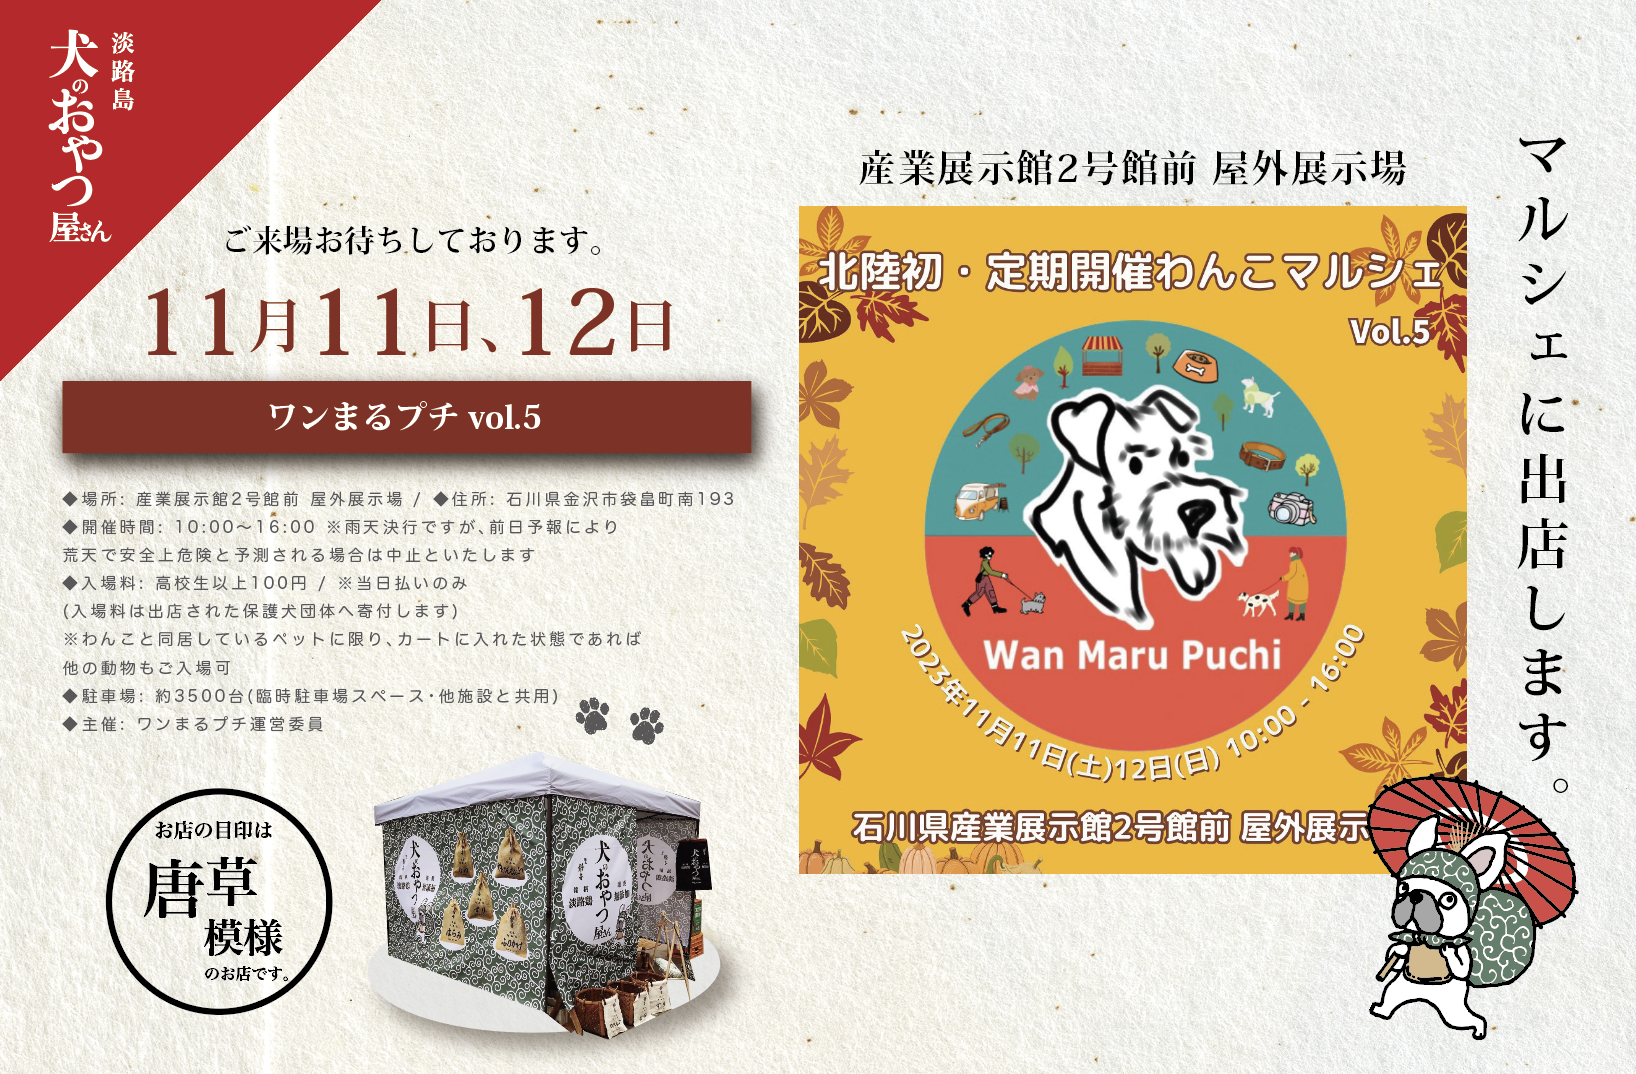 11月11日&12日 @金沢 🦀🎪北陸最大級わんこマルシェ ワンまるプチに出店します。